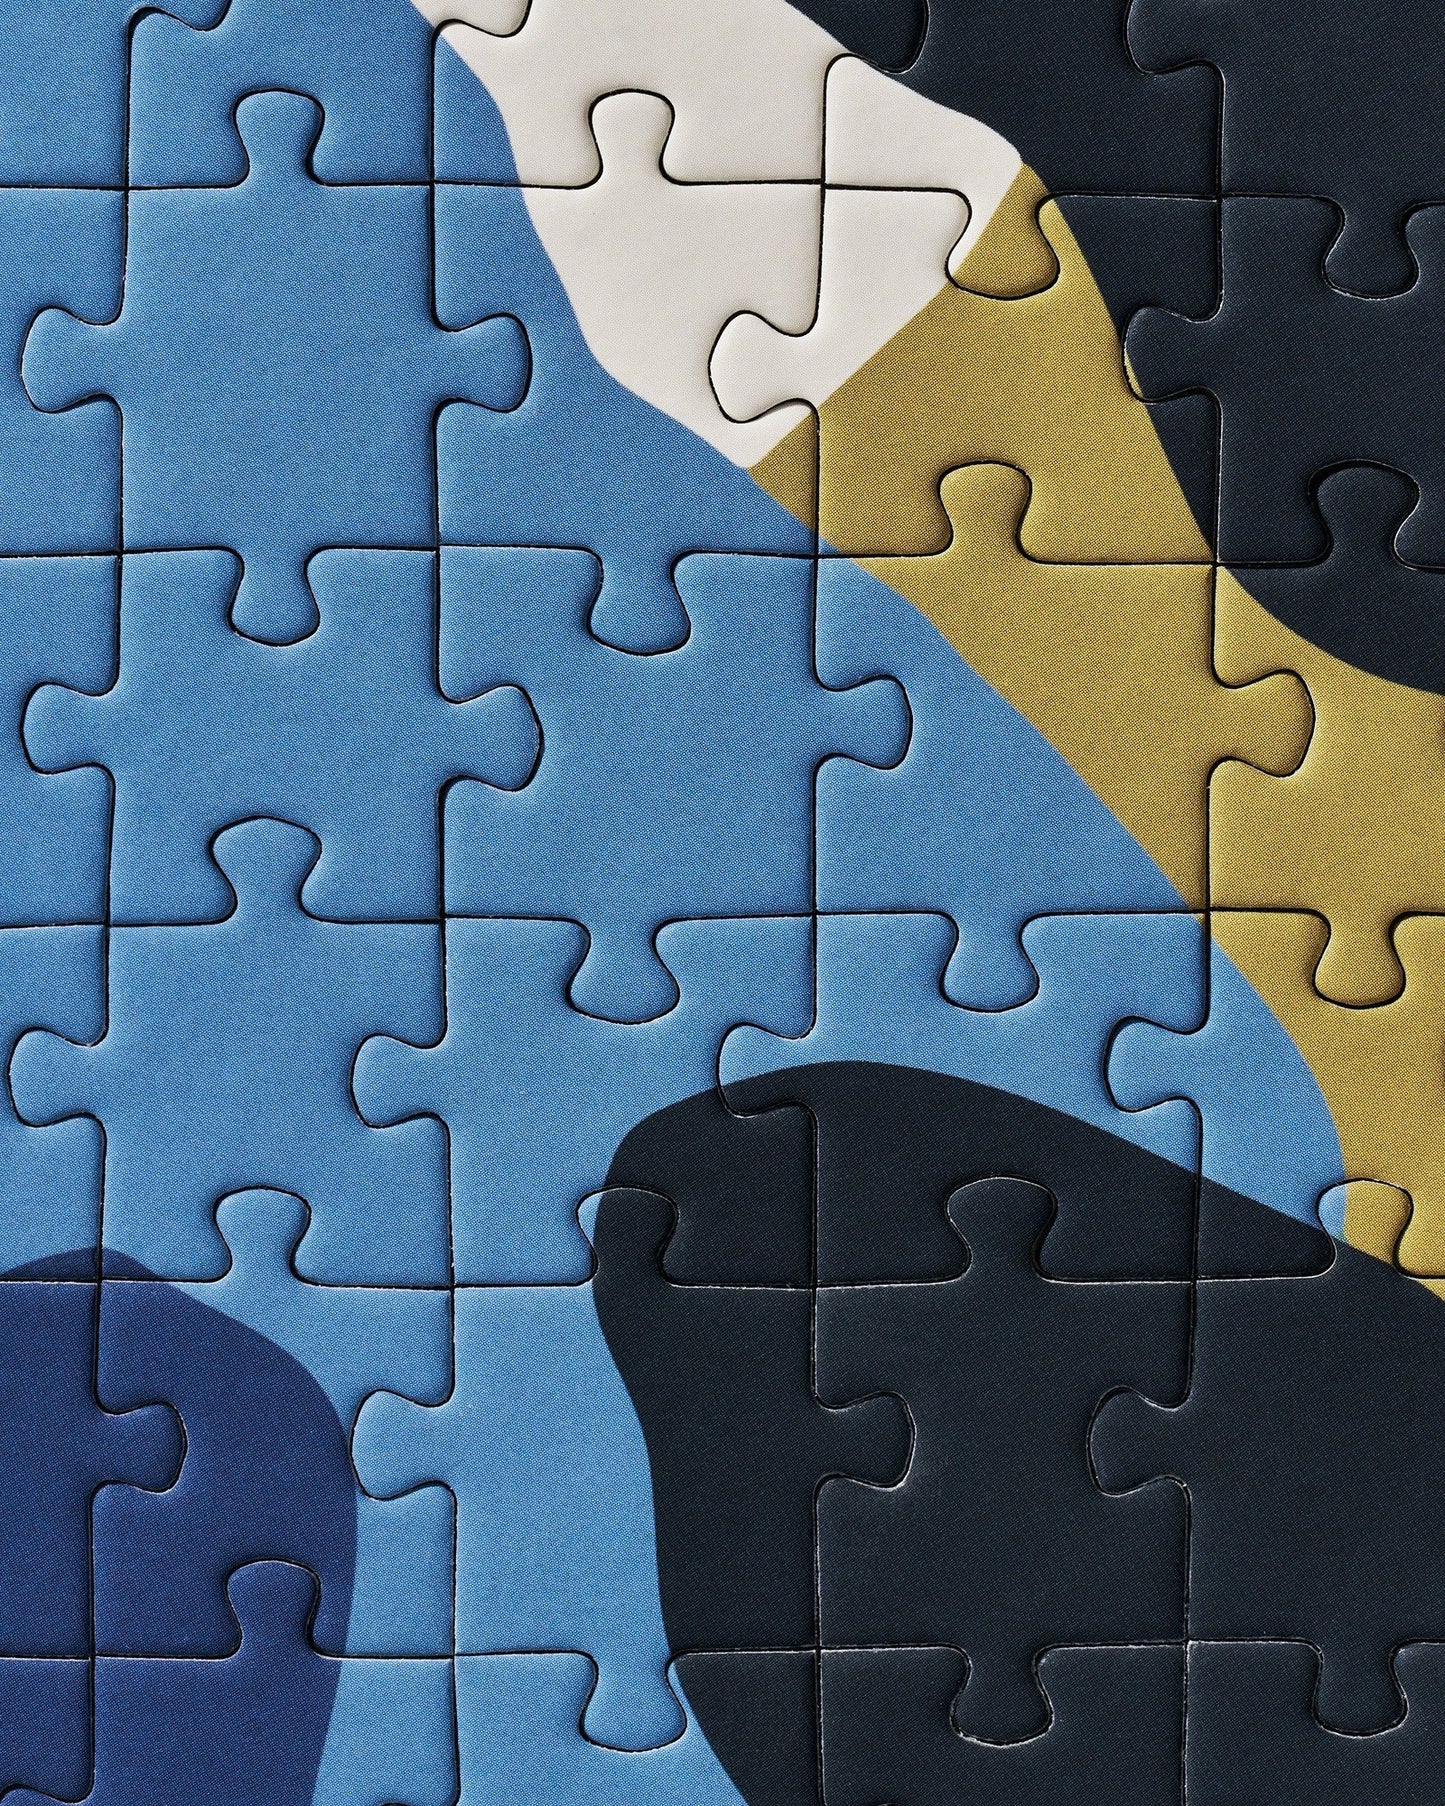 Migula Puzzle by Marleigh Culver | Ordinary Habit